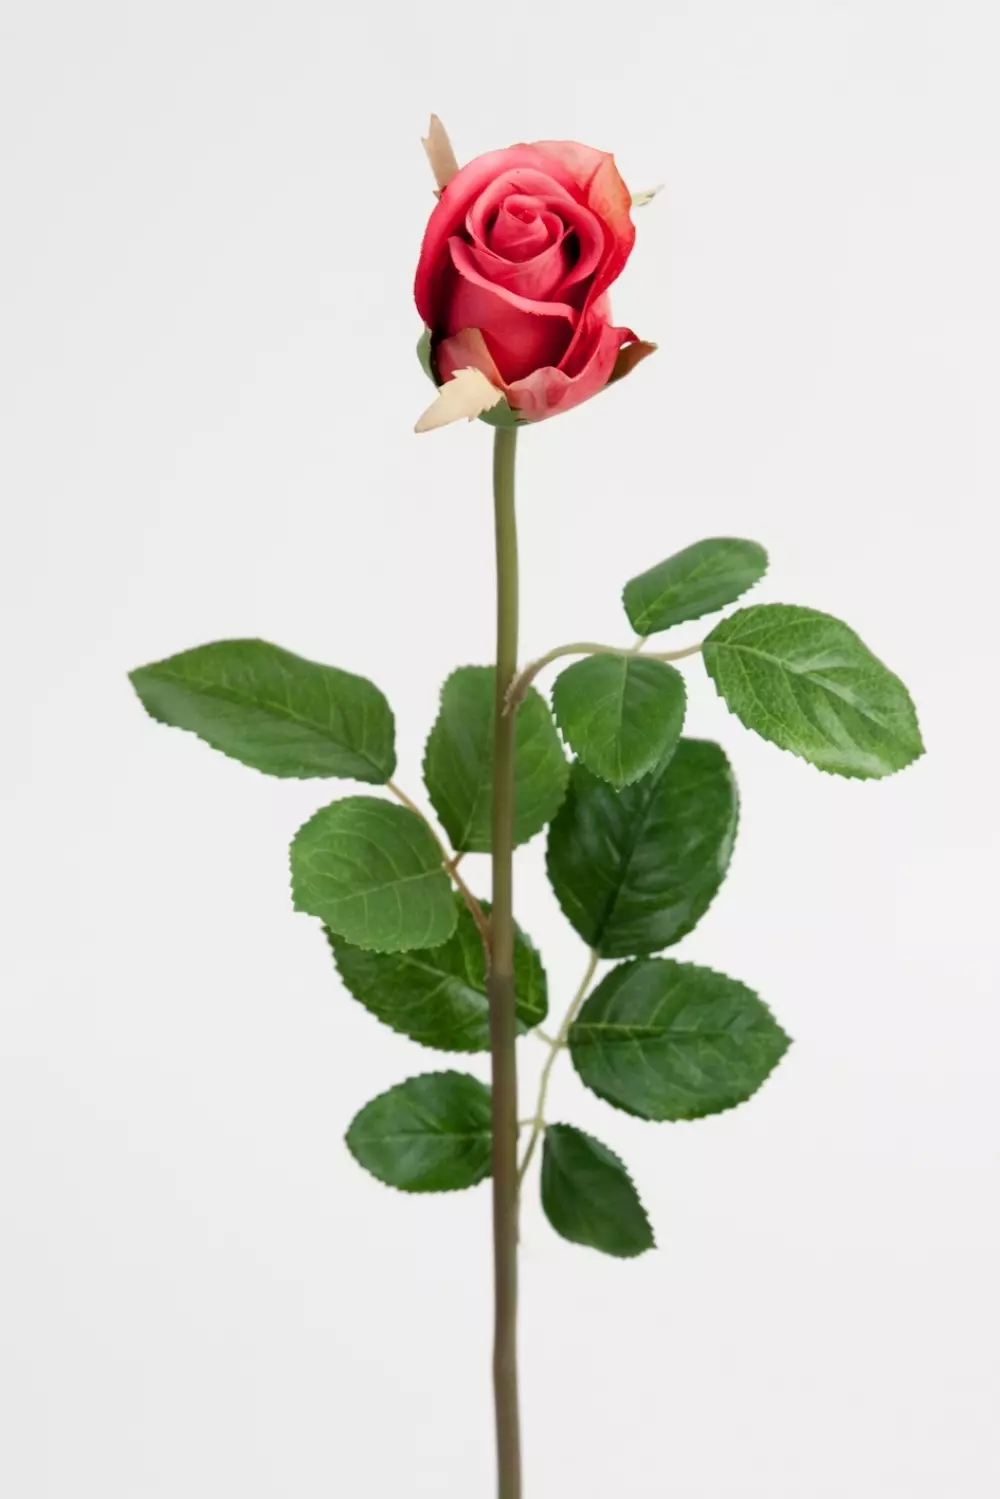 Rose Mørk Rosa H50, 7330026103458, 2889-23, Interiør, Blomster og Planter, Mr Plant, Ros